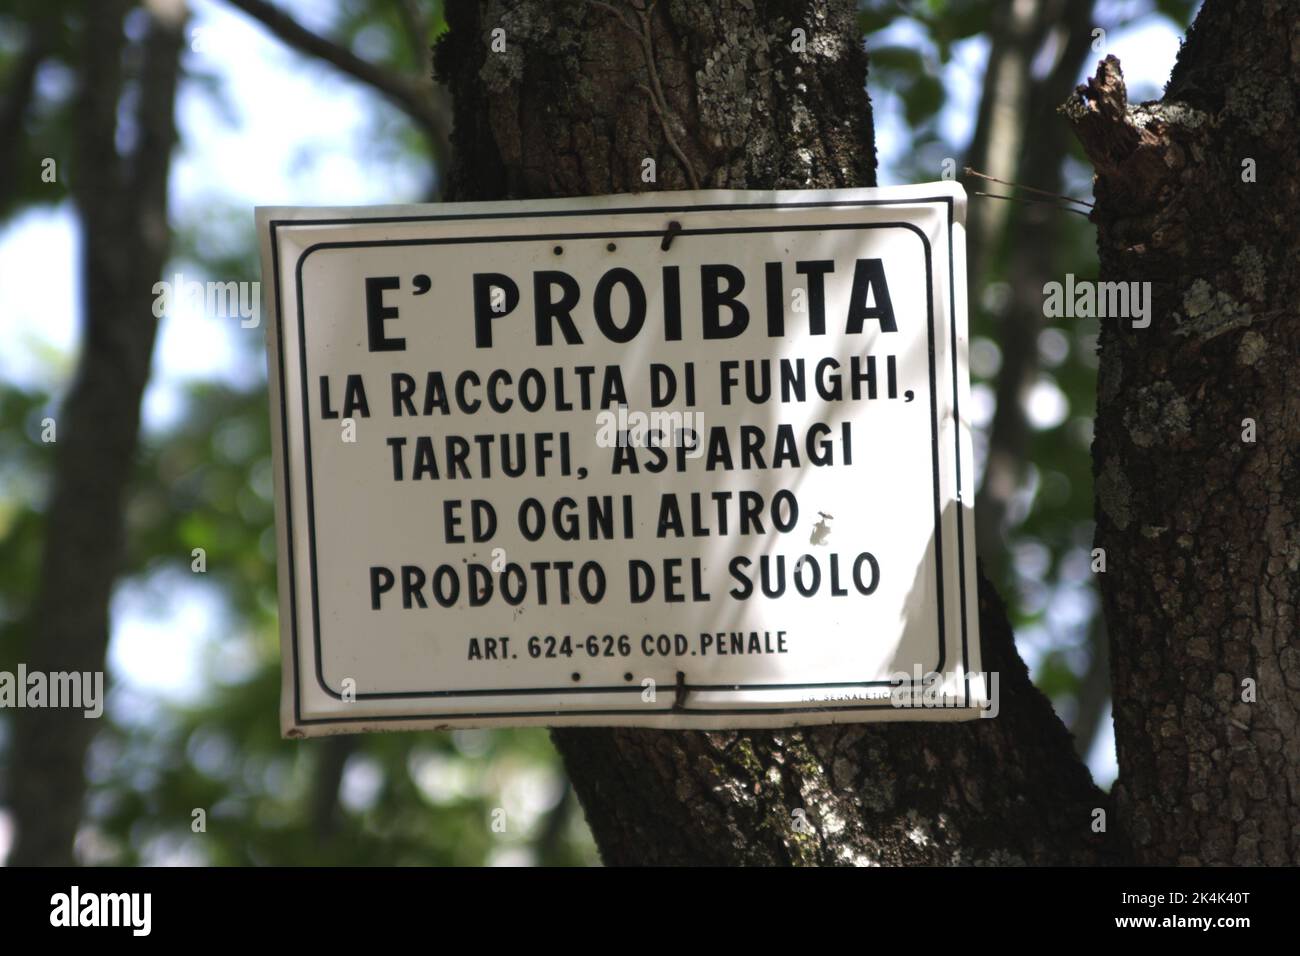 Proibita, signe en italien interdisant la cueillette de champignons et d'autres produits alimentaires sauvages, Ombrie, Italie Banque D'Images